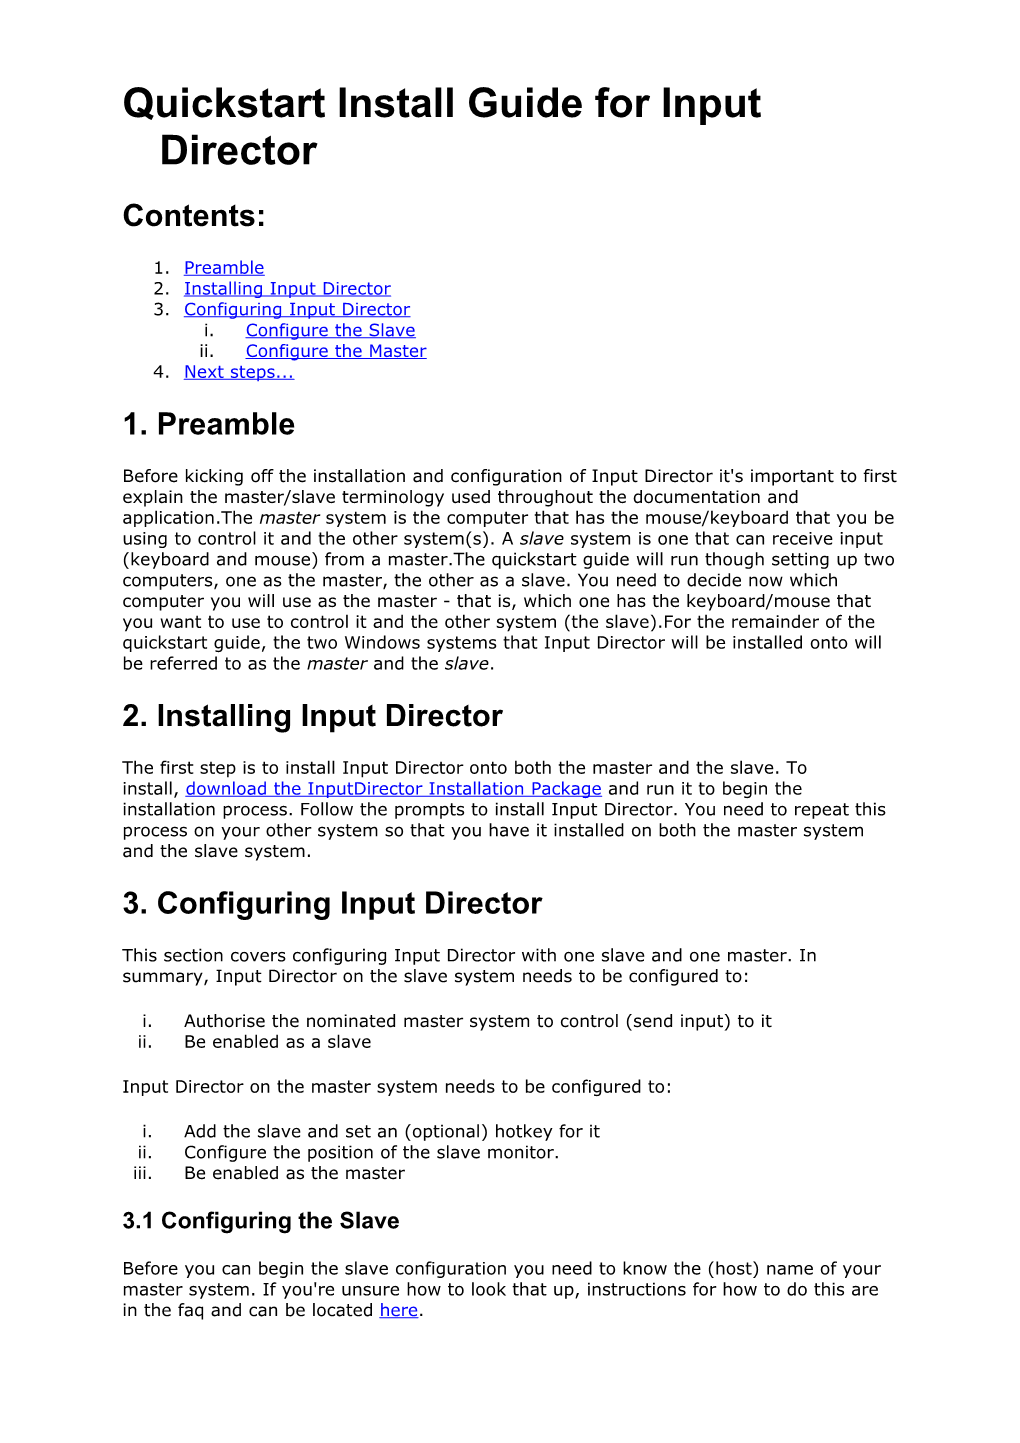 Quickstart Install Guide for Input Director